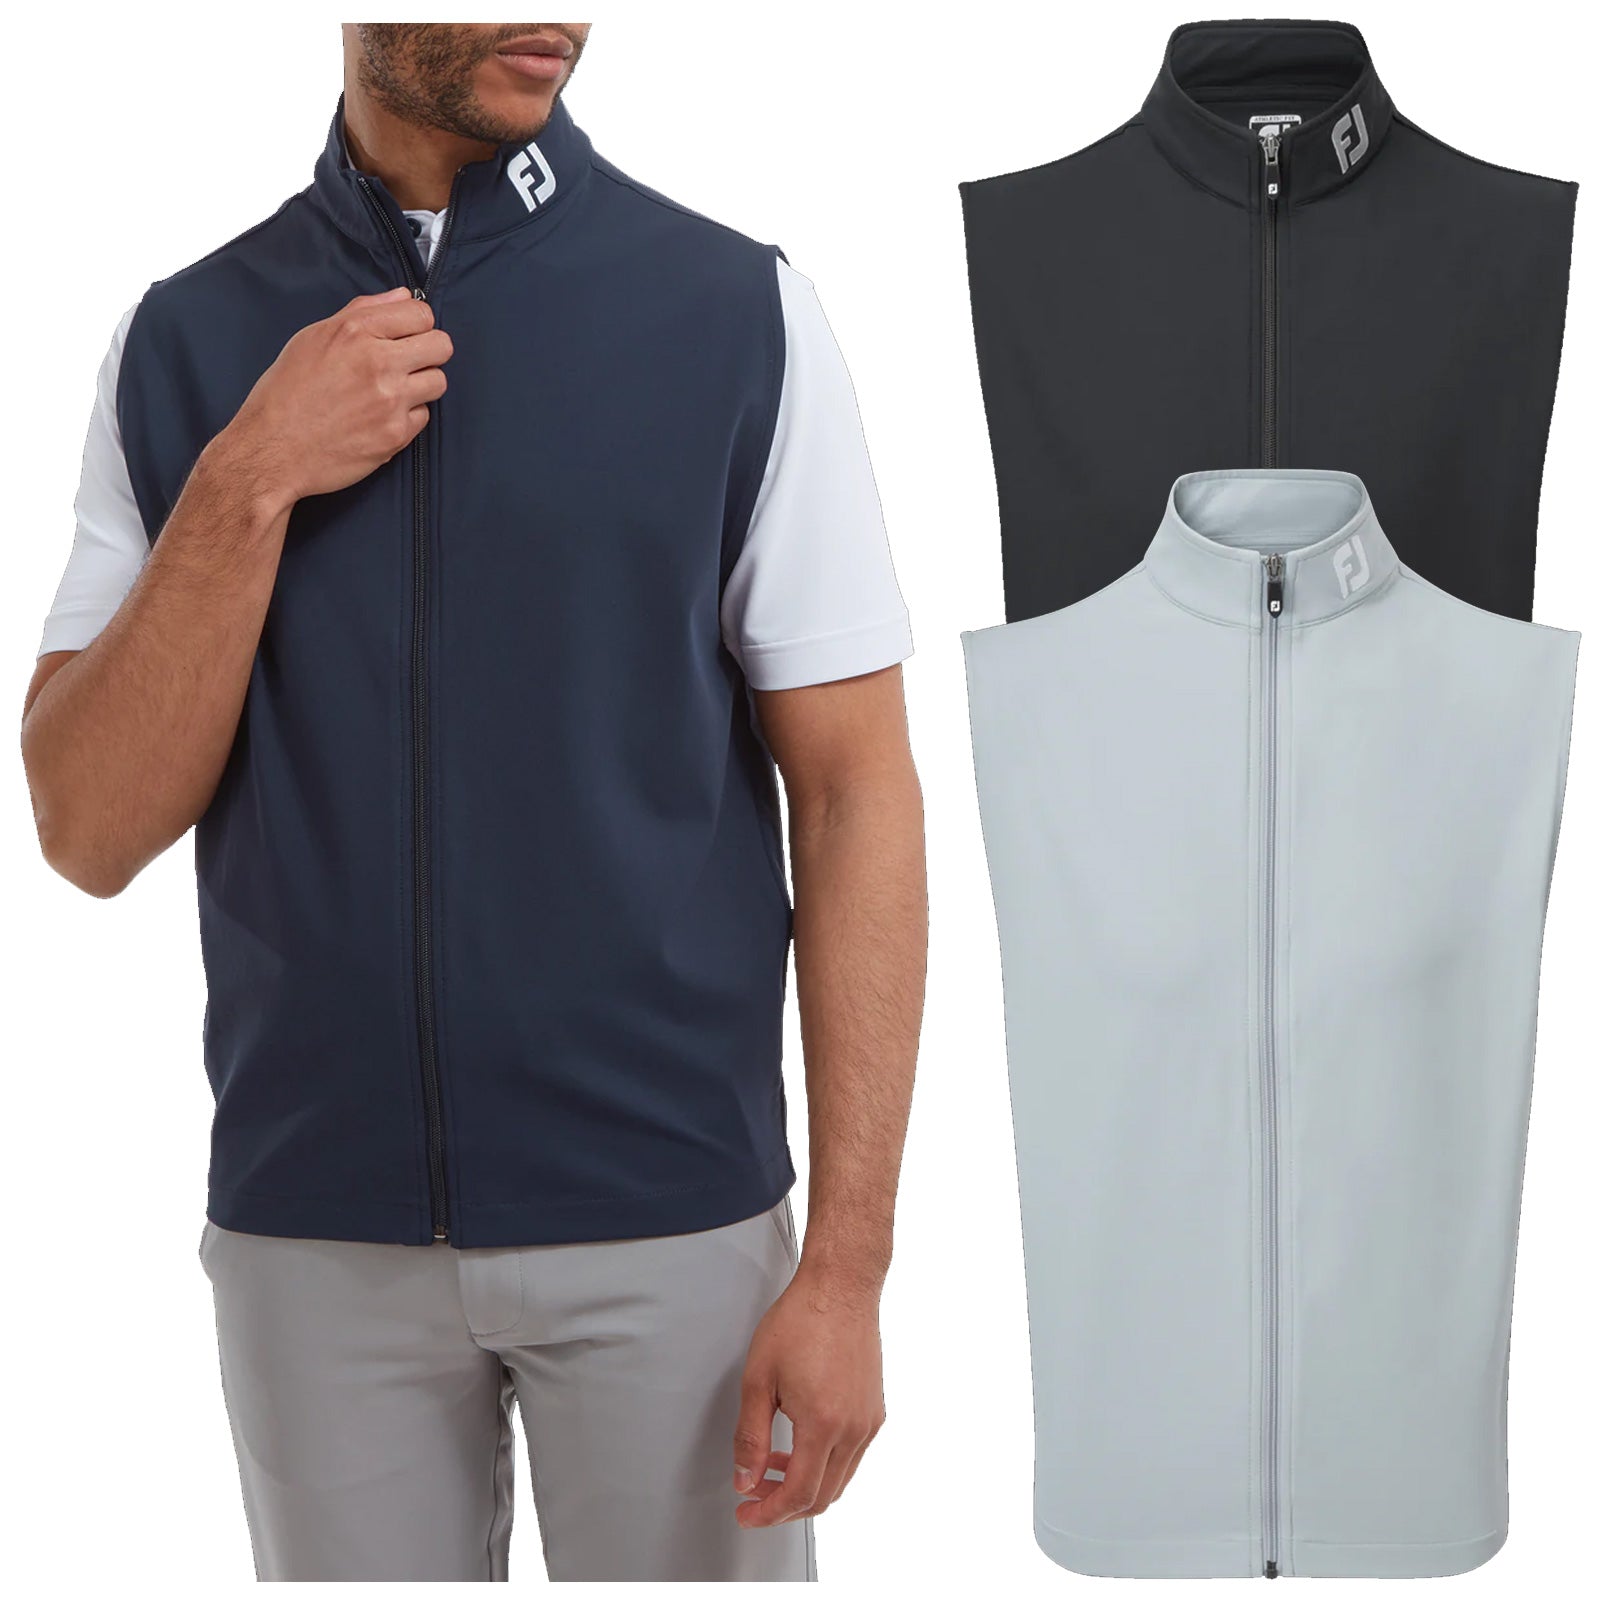  FootJoy Mens Full-Zip Knit Vest